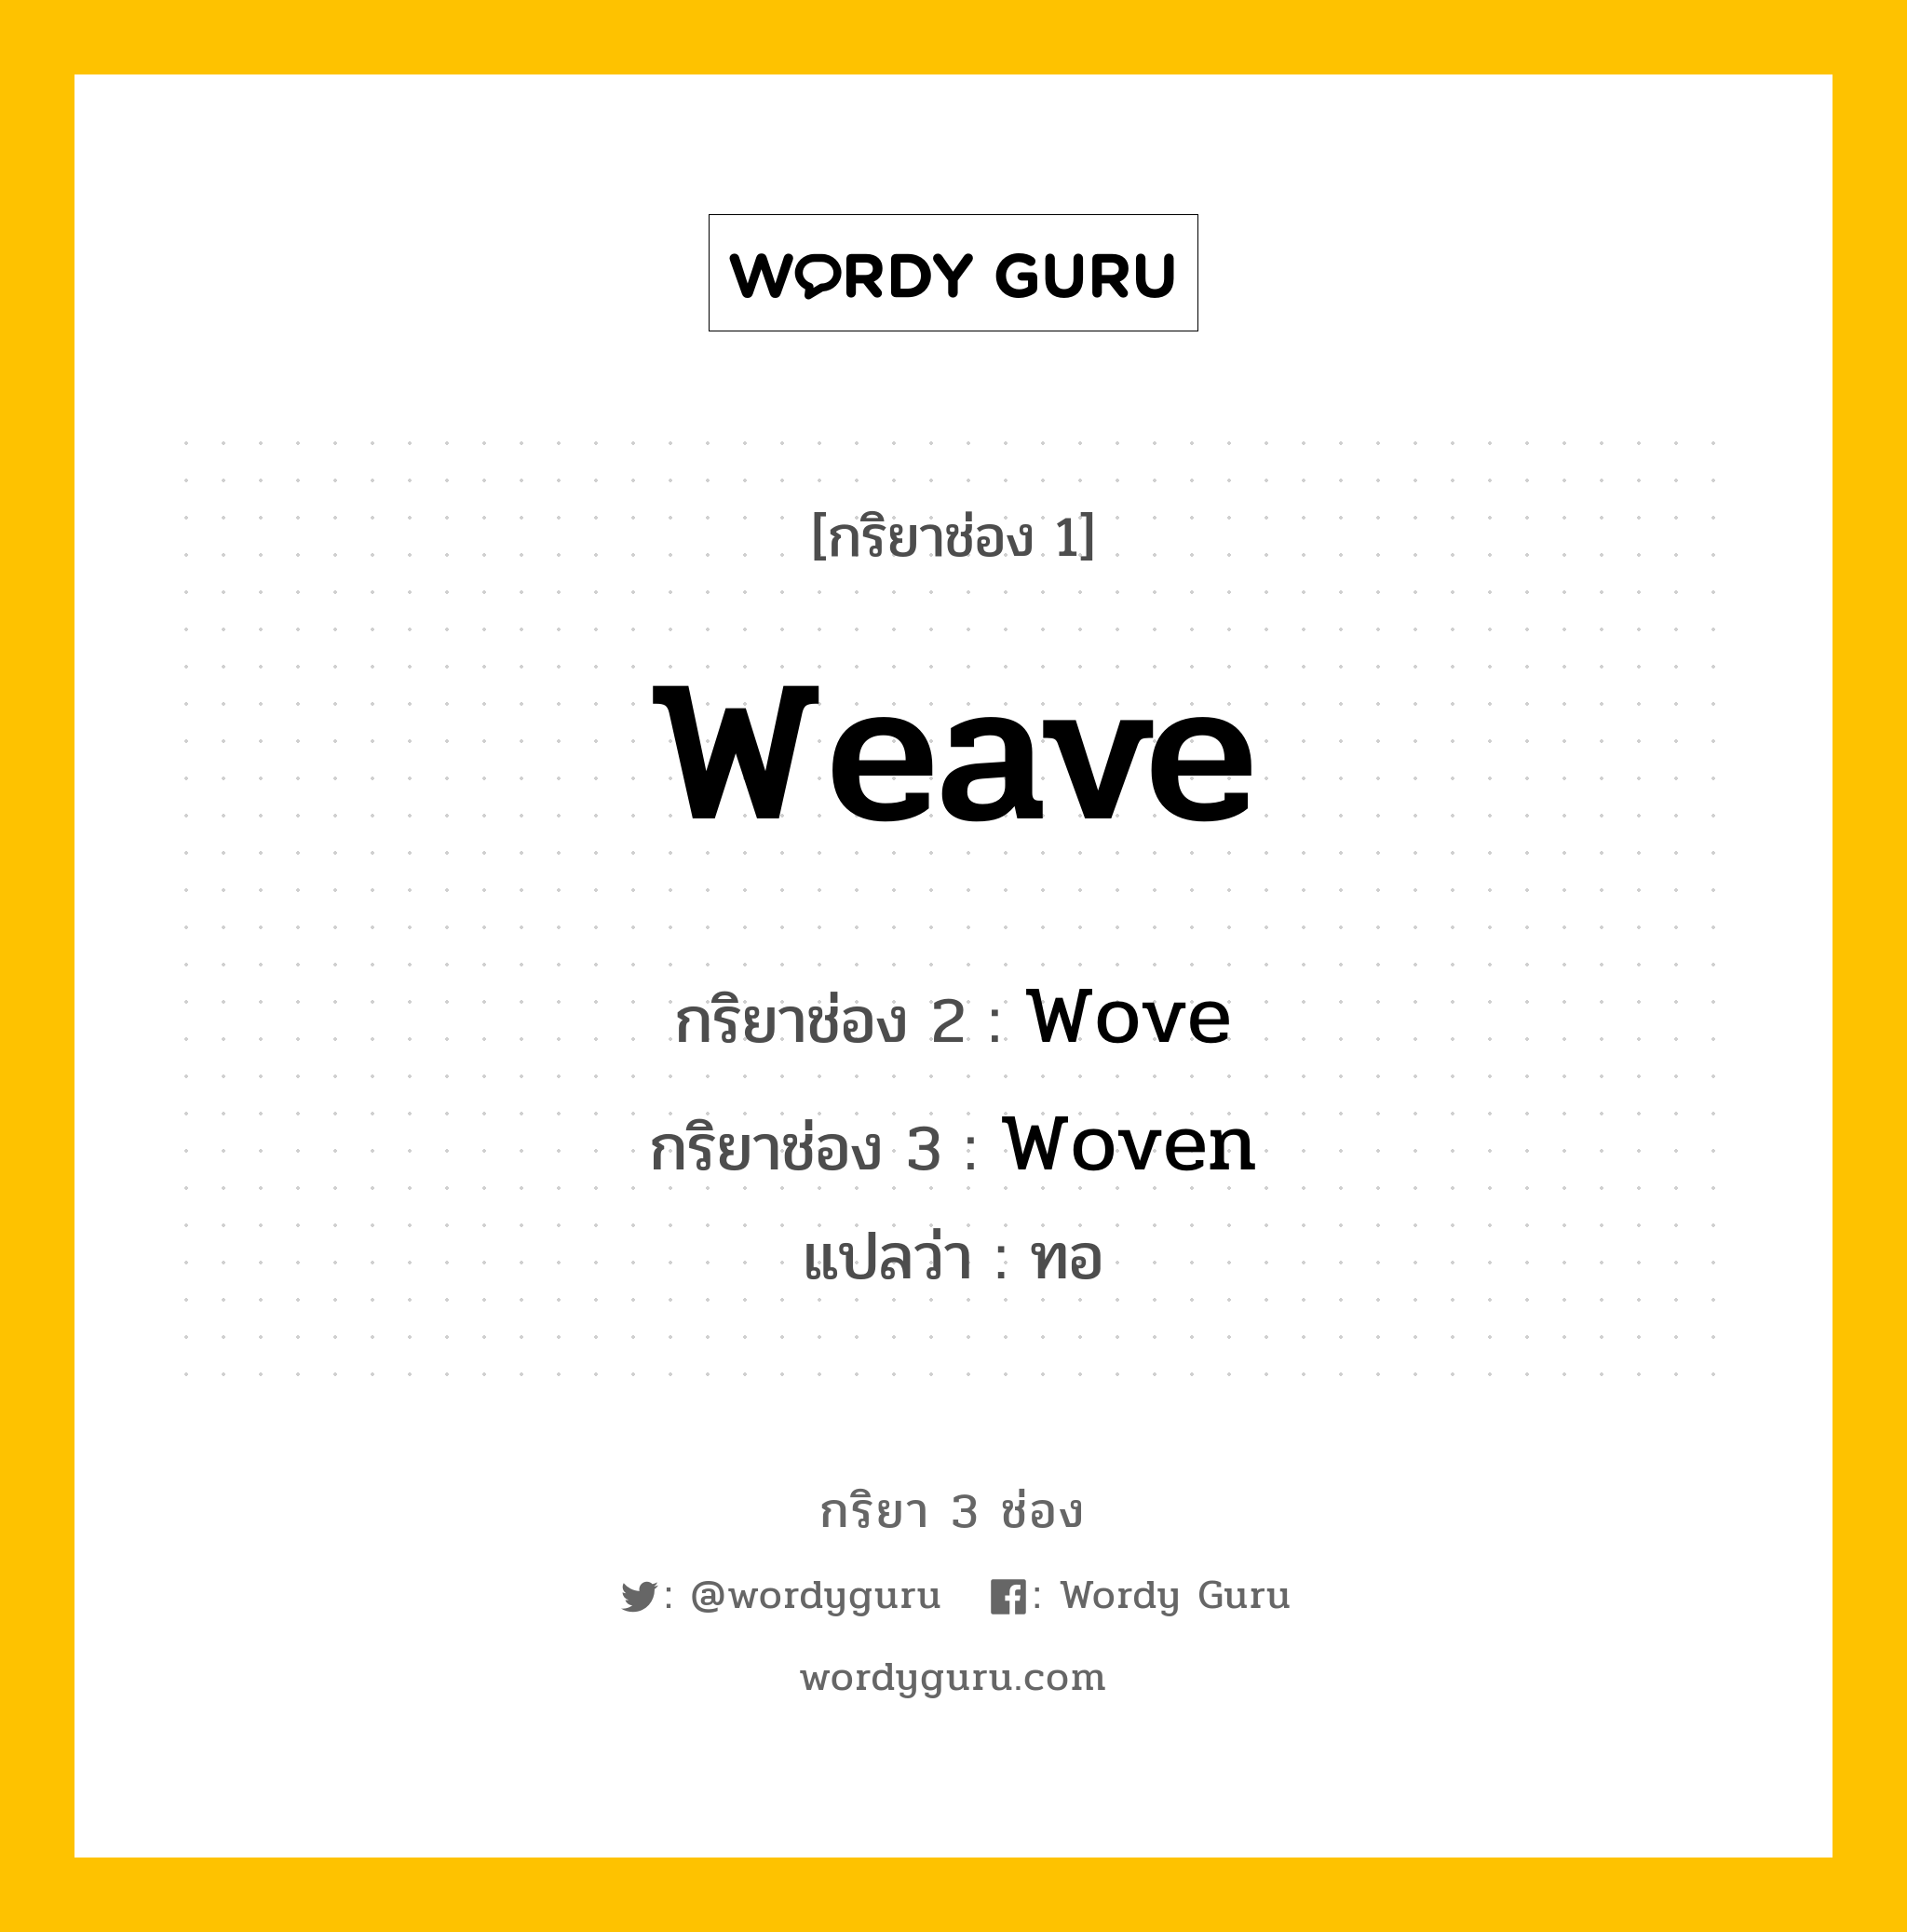 กริยา 3 ช่อง: Weave ช่อง 2 Weave ช่อง 3 คืออะไร, กริยาช่อง 1 Weave กริยาช่อง 2 Wove กริยาช่อง 3 Woven แปลว่า ทอ มีหลายแบบ y หมวด Irregular Verb